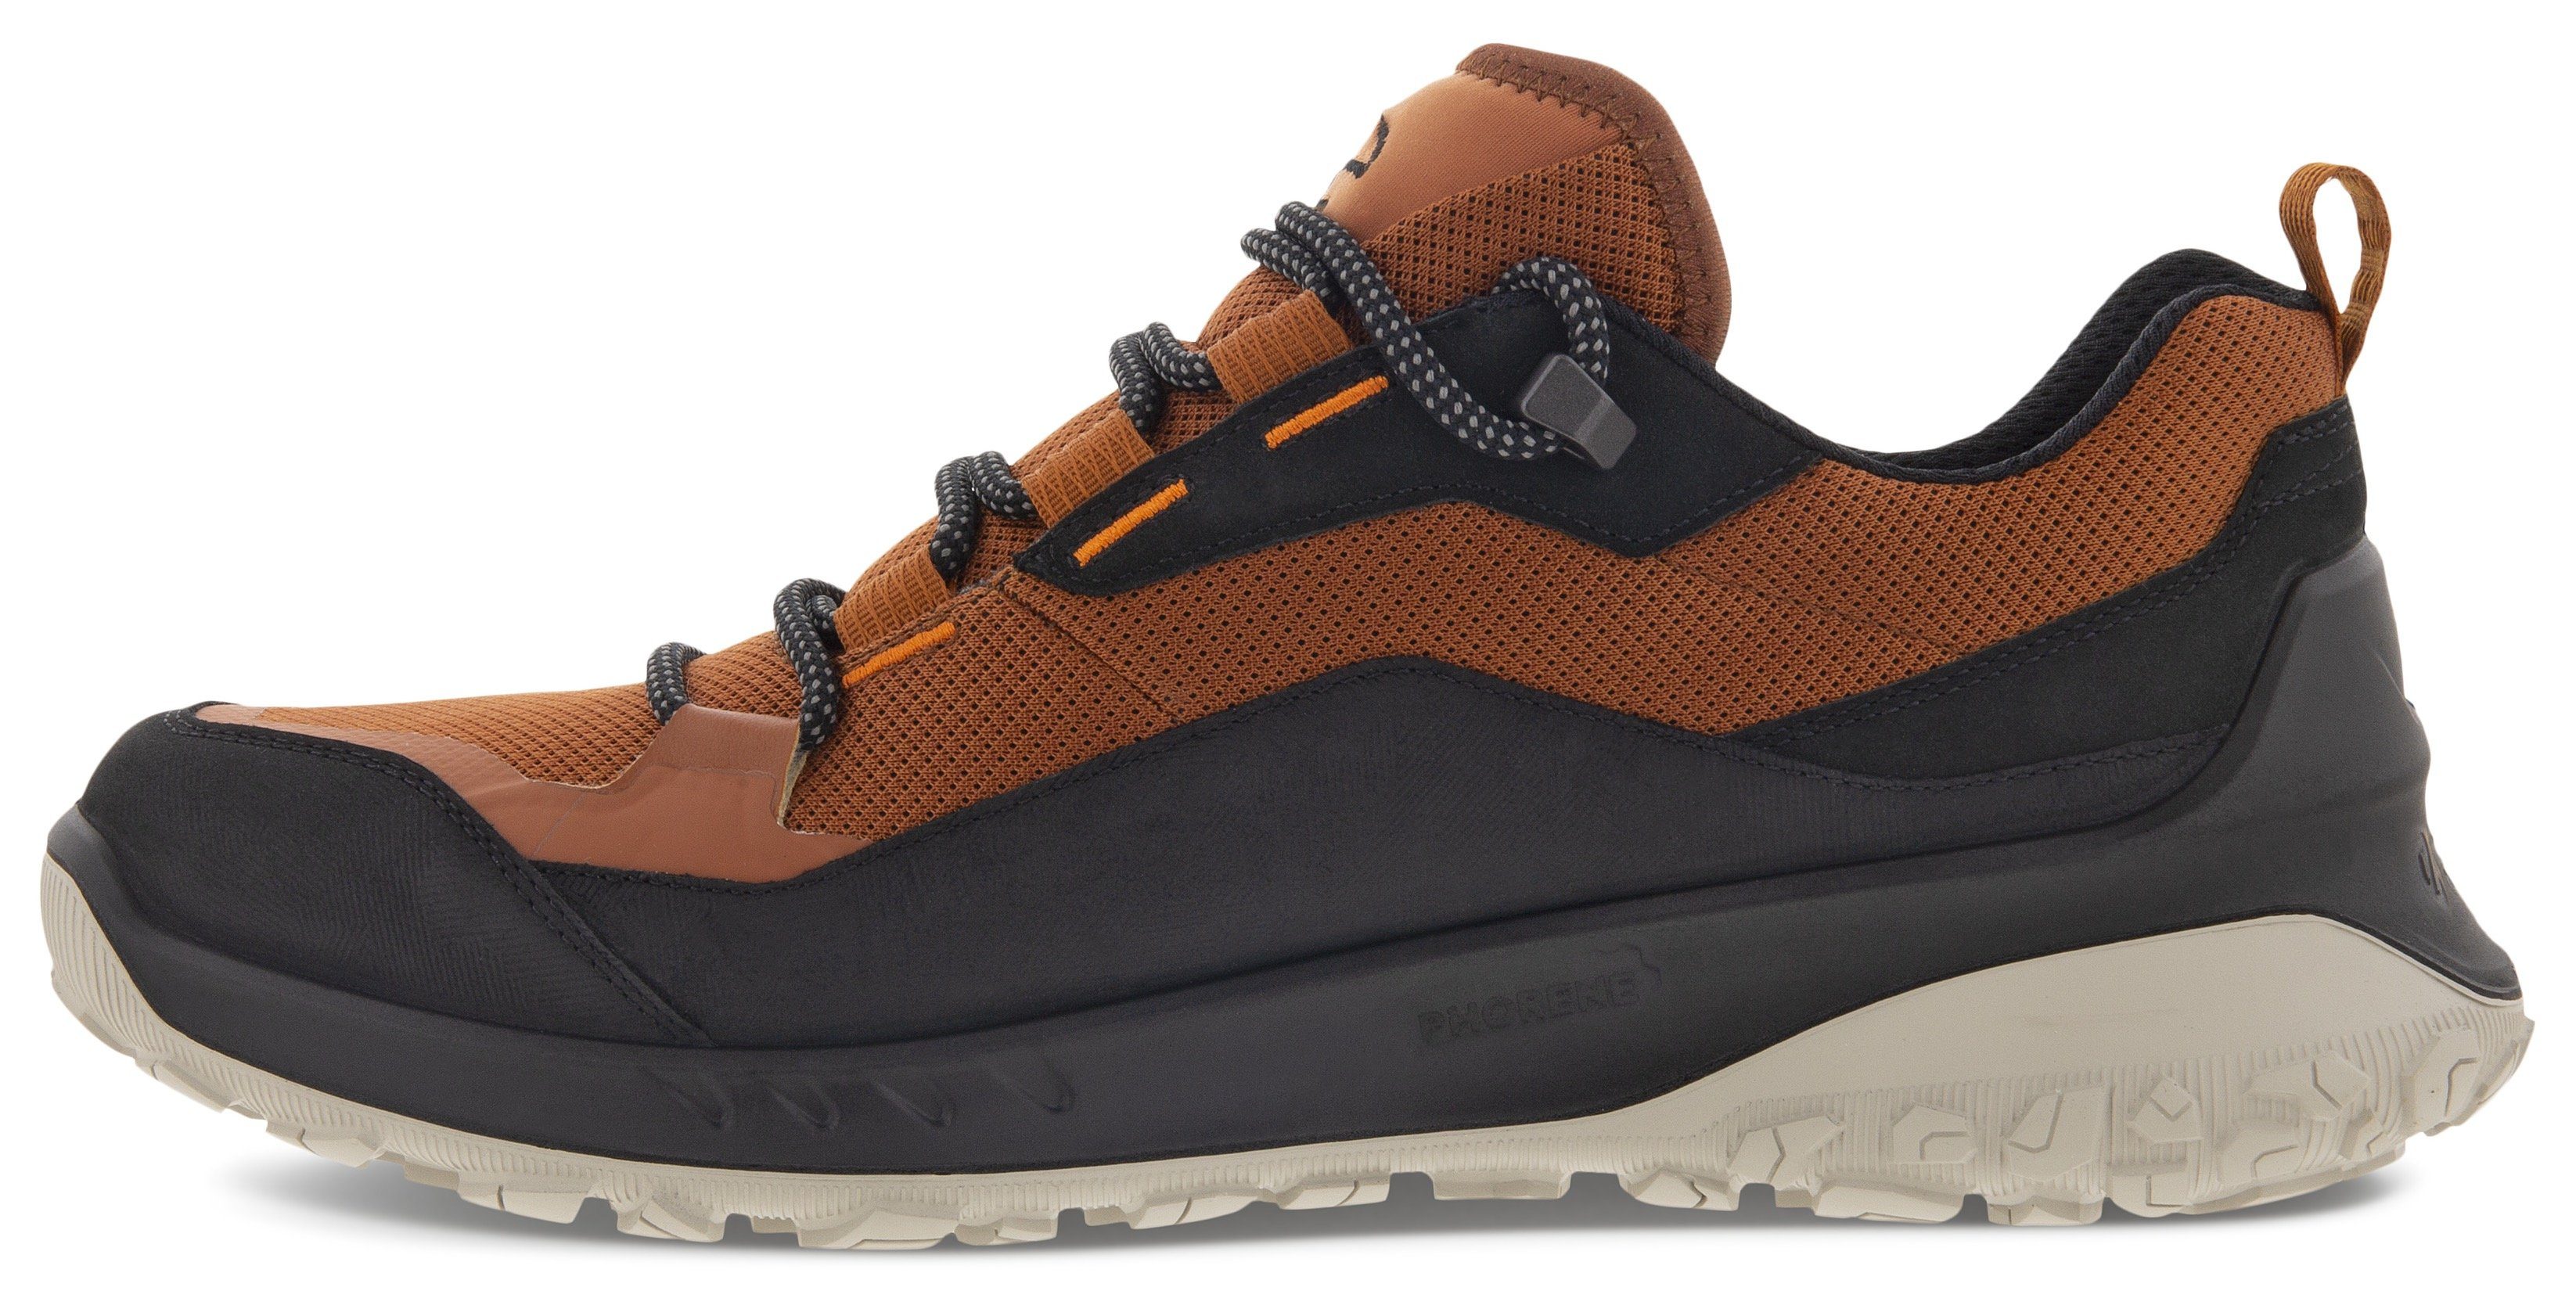 Sneaker cognac-schwarz Michelin-Technologie sportive Laufsohle M mit Ecco ULT-TRN